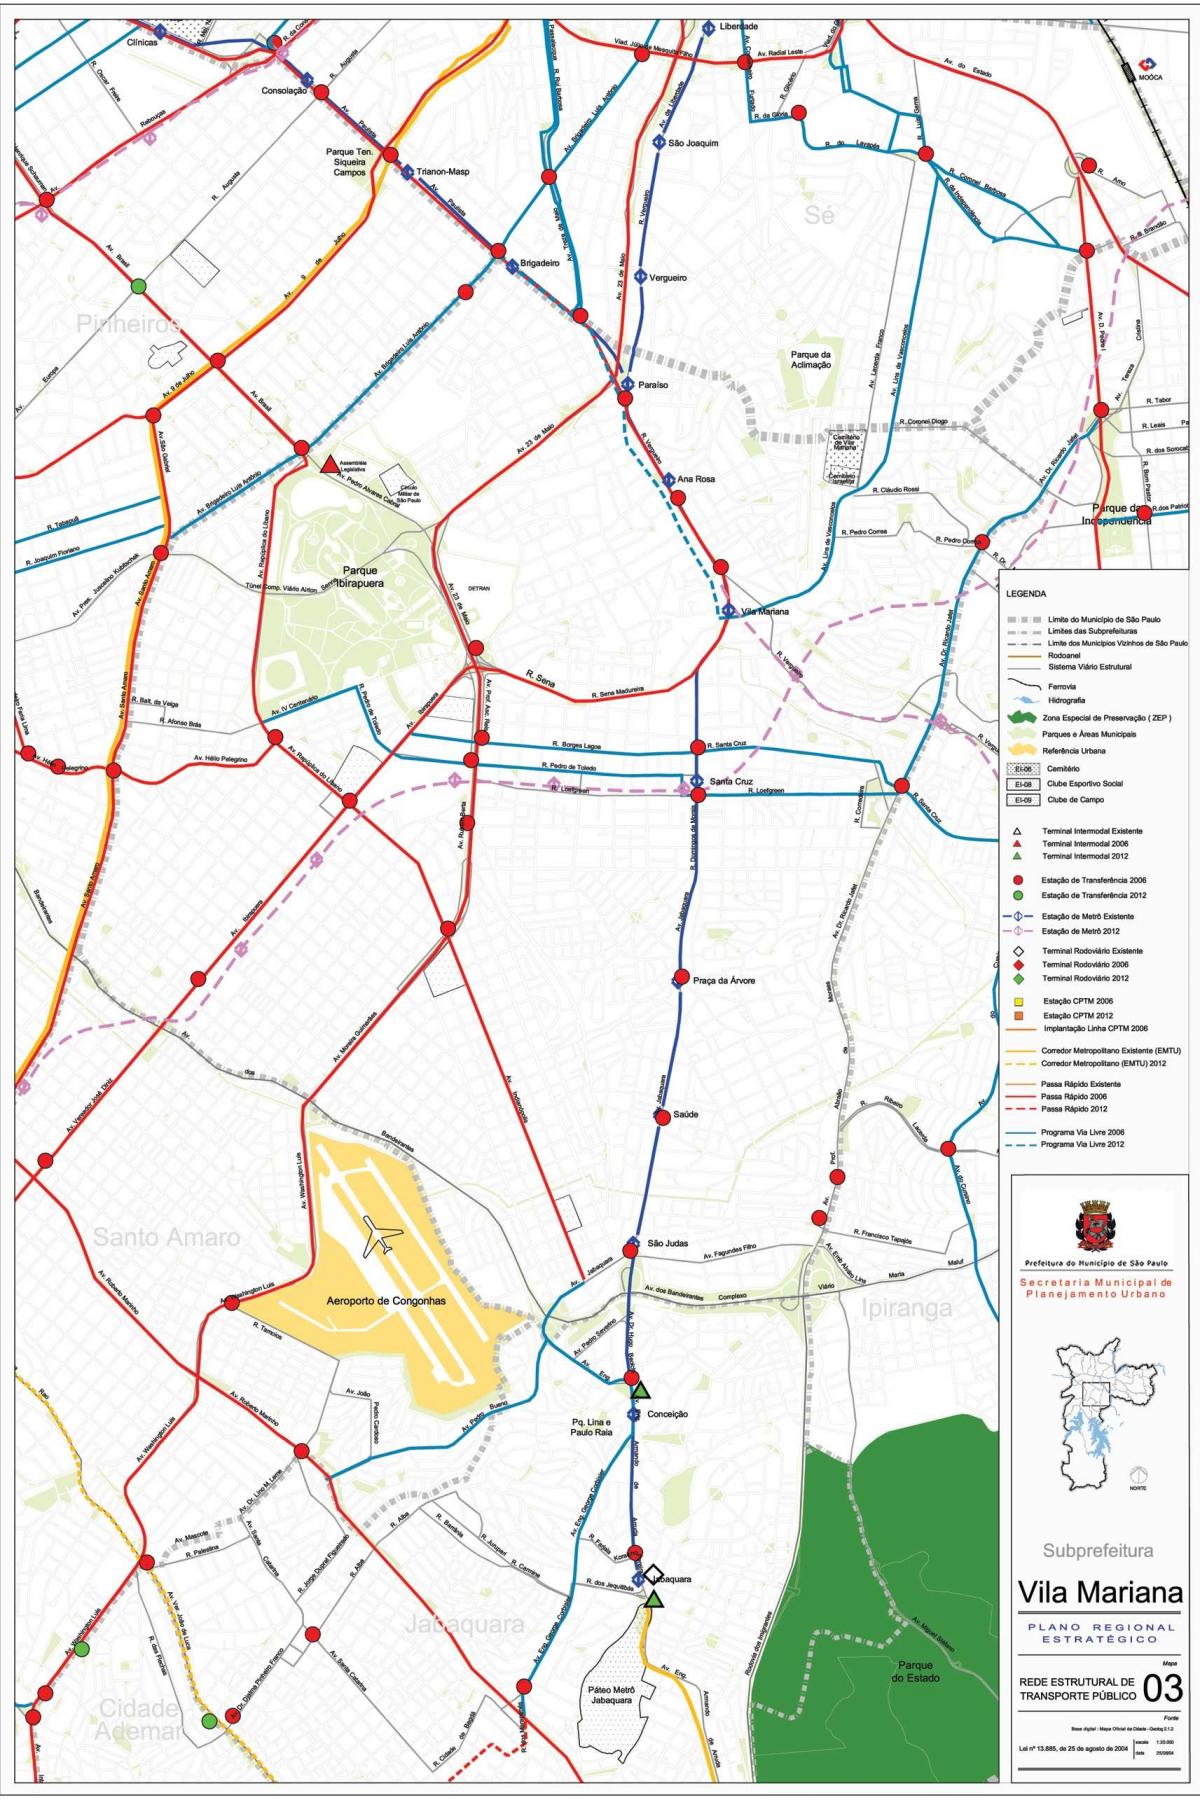 Карта Вила-Мариана Сан - Паулу- общественный транспорт